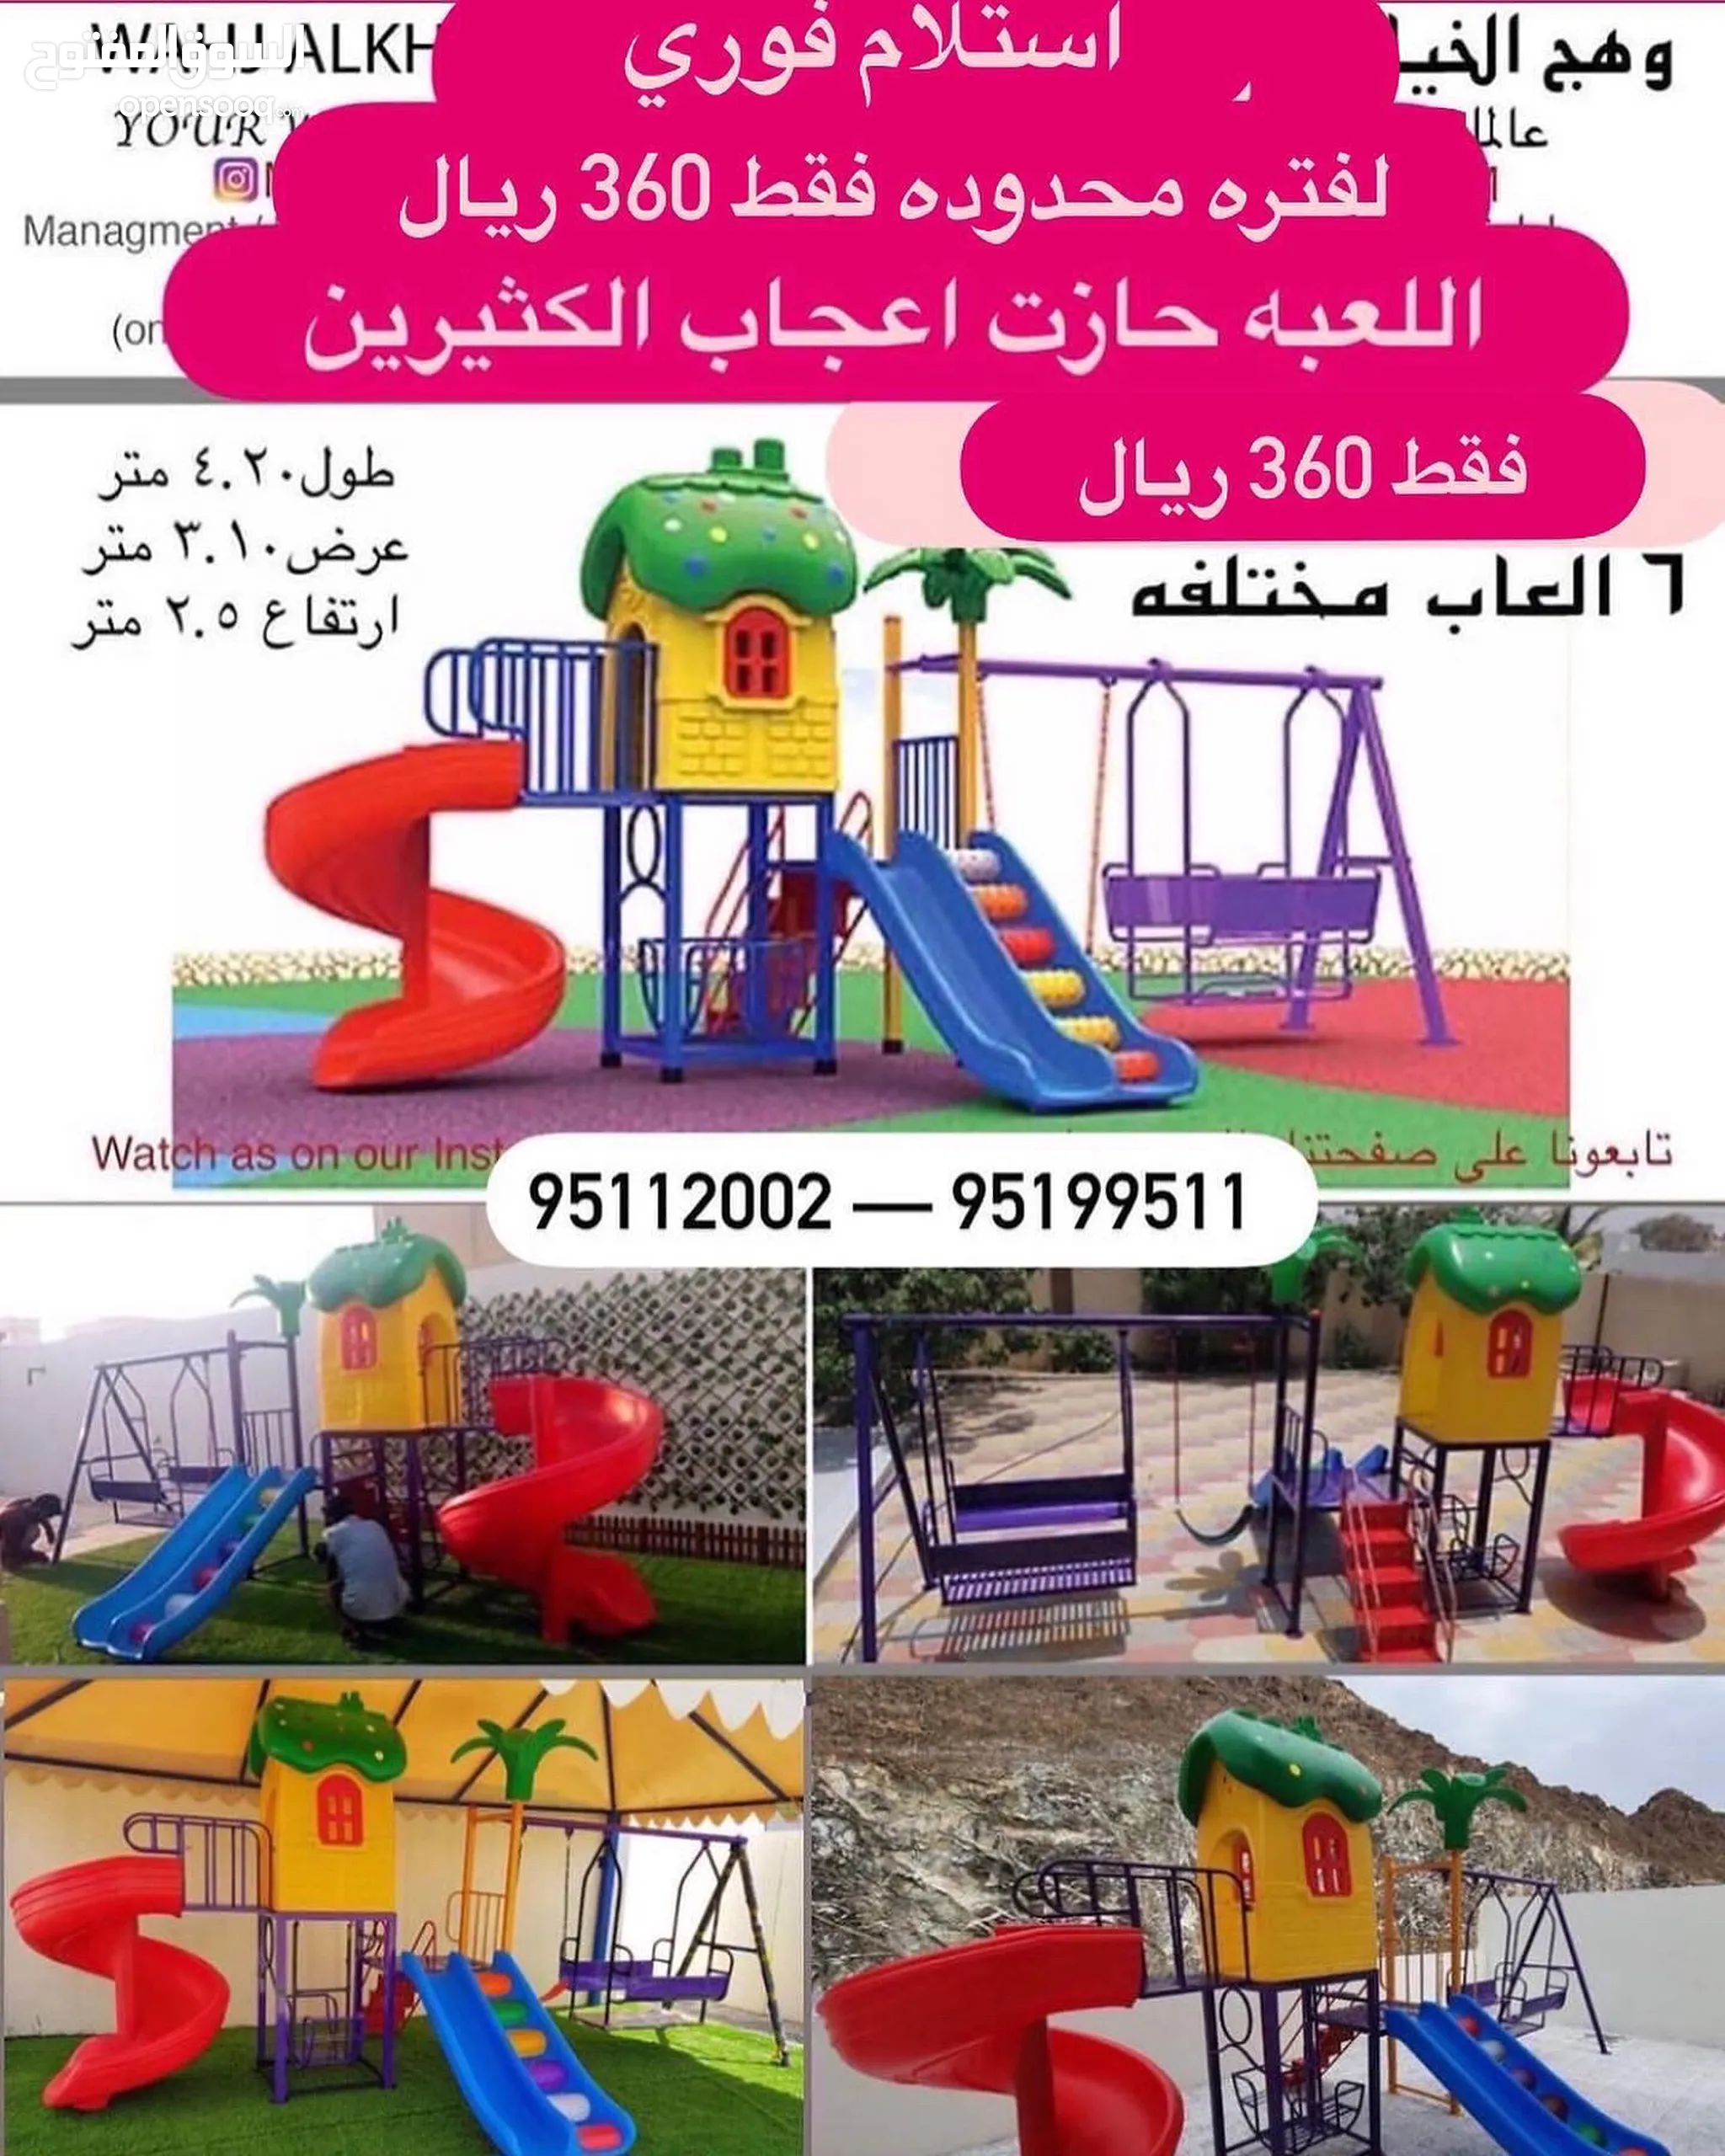 العاب اطفال للبيع : خيم اطفال : العاب مطبخ : ارخص الاسعار في عُمان | السوق  المفتوح